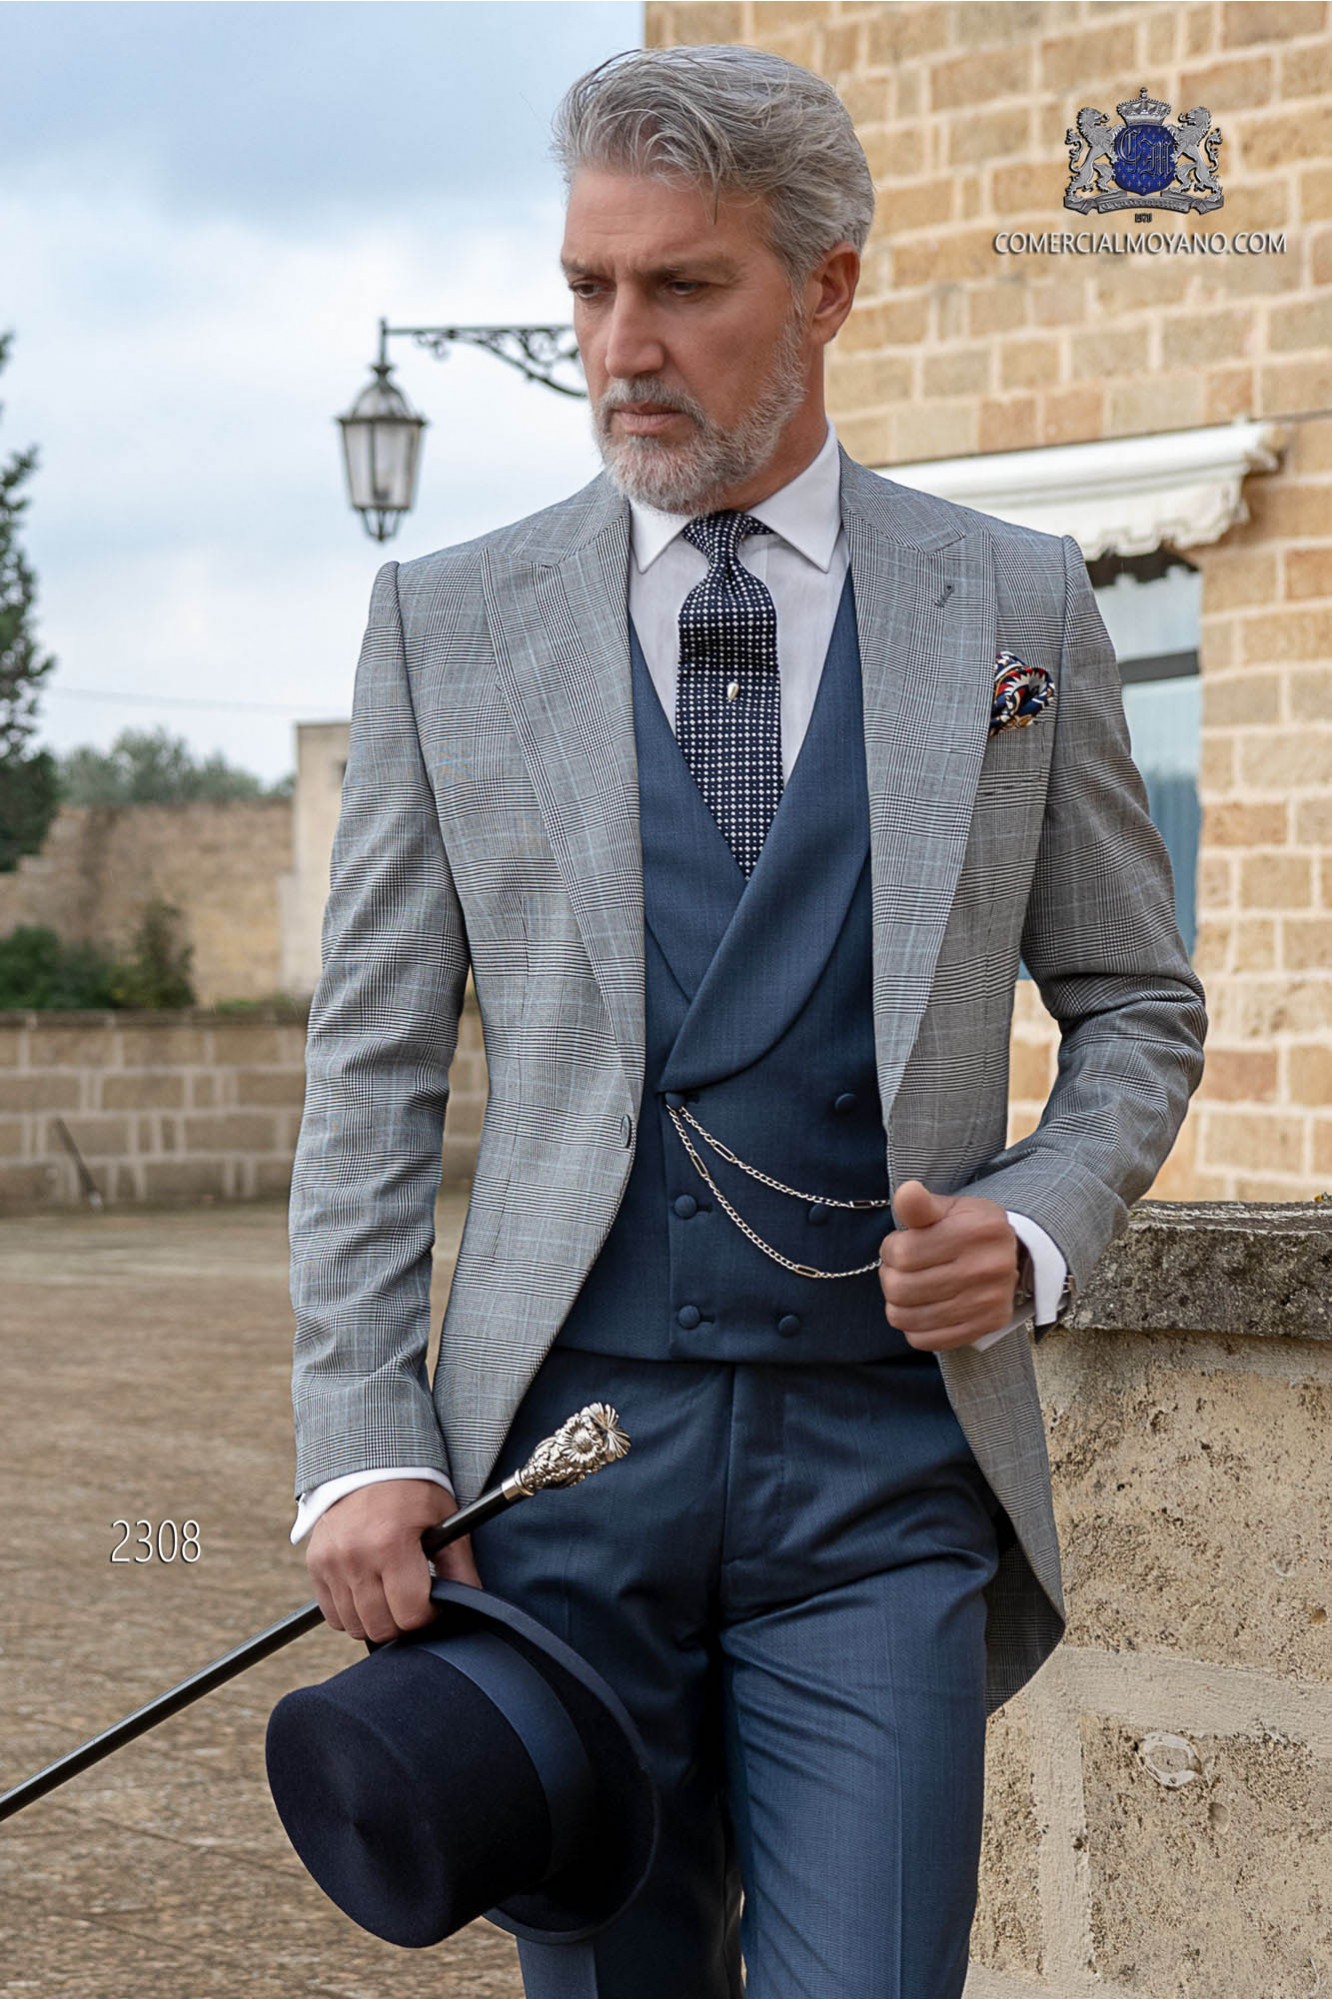 Chaqué de novio príncipe de gales gris y azul modelo: 2308 Mario Moyano colección Gentleman